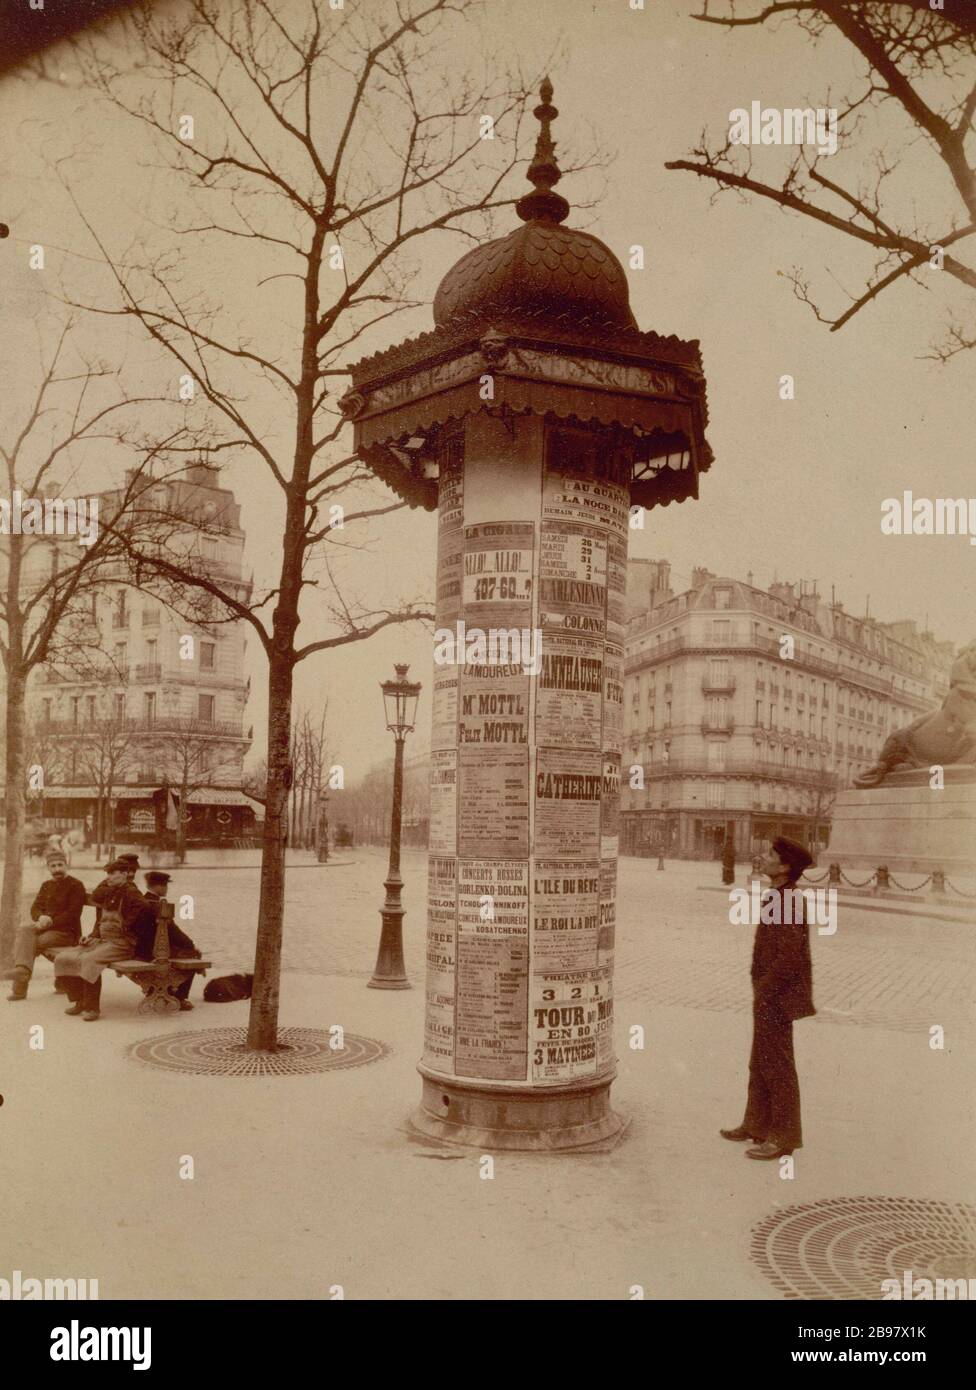 MORRIS COLUMN Colonne Morris, place Denfert Rochereau, Paris XIVème arrondissement, vers 1898-1900. Photographie : Eugène Atget (1857-1927). Paris, Musée Carnavalet. Stock Photo